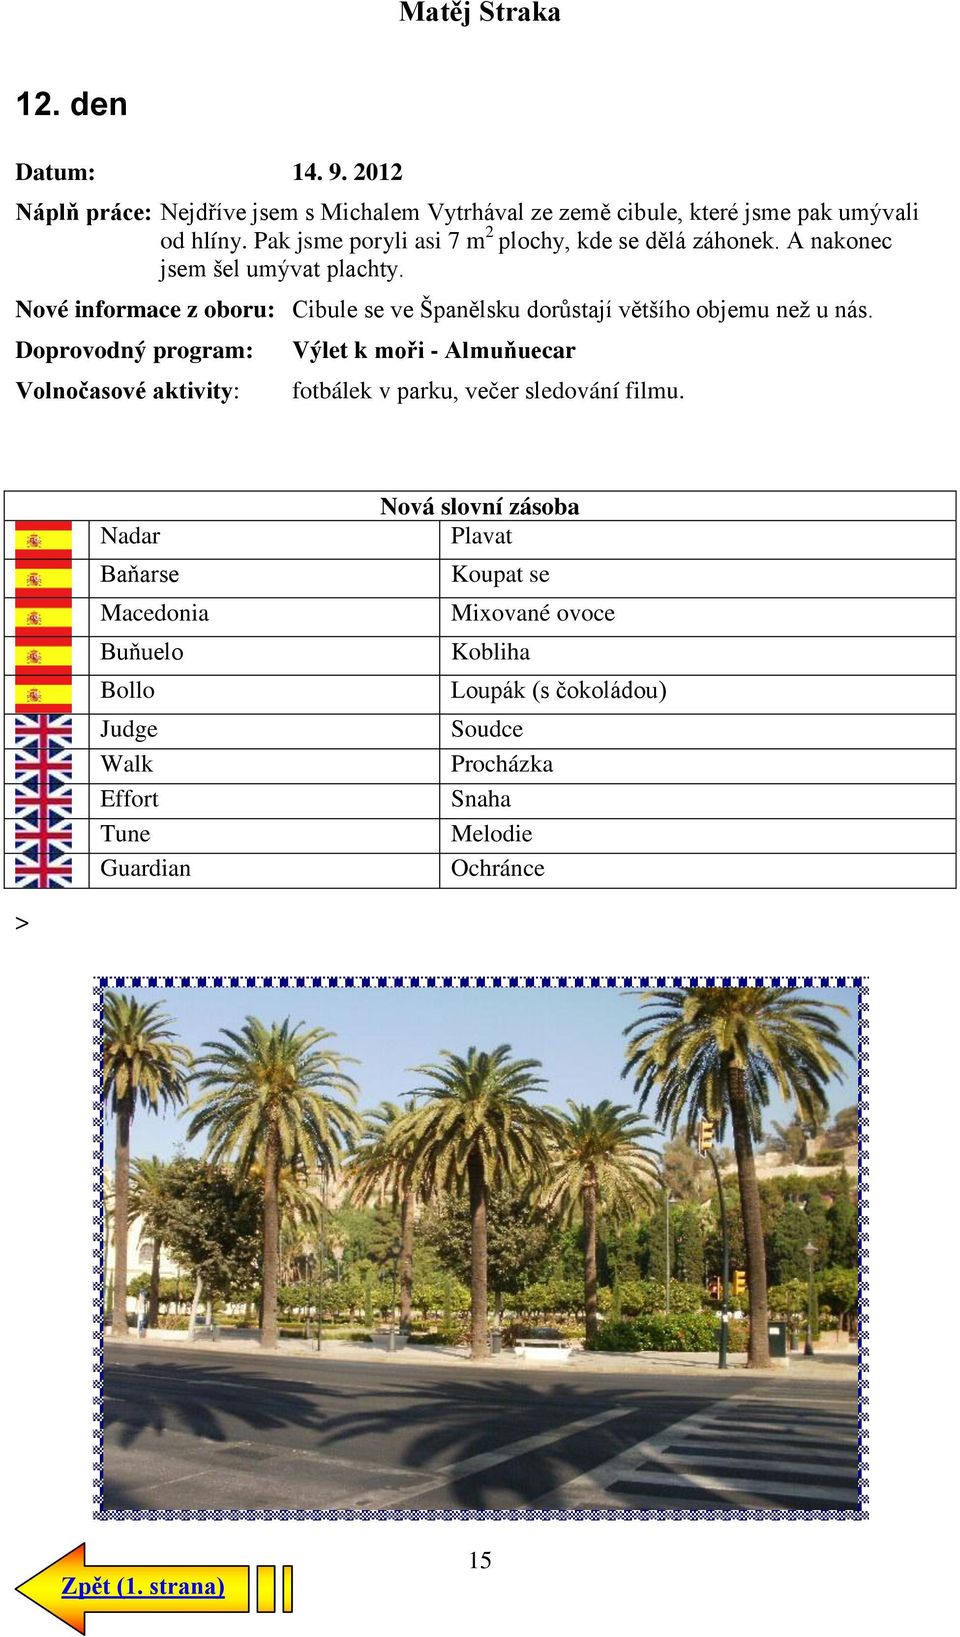 Nové informace z oboru: Cibule se ve Španělsku dorůstají většího objemu než u nás.